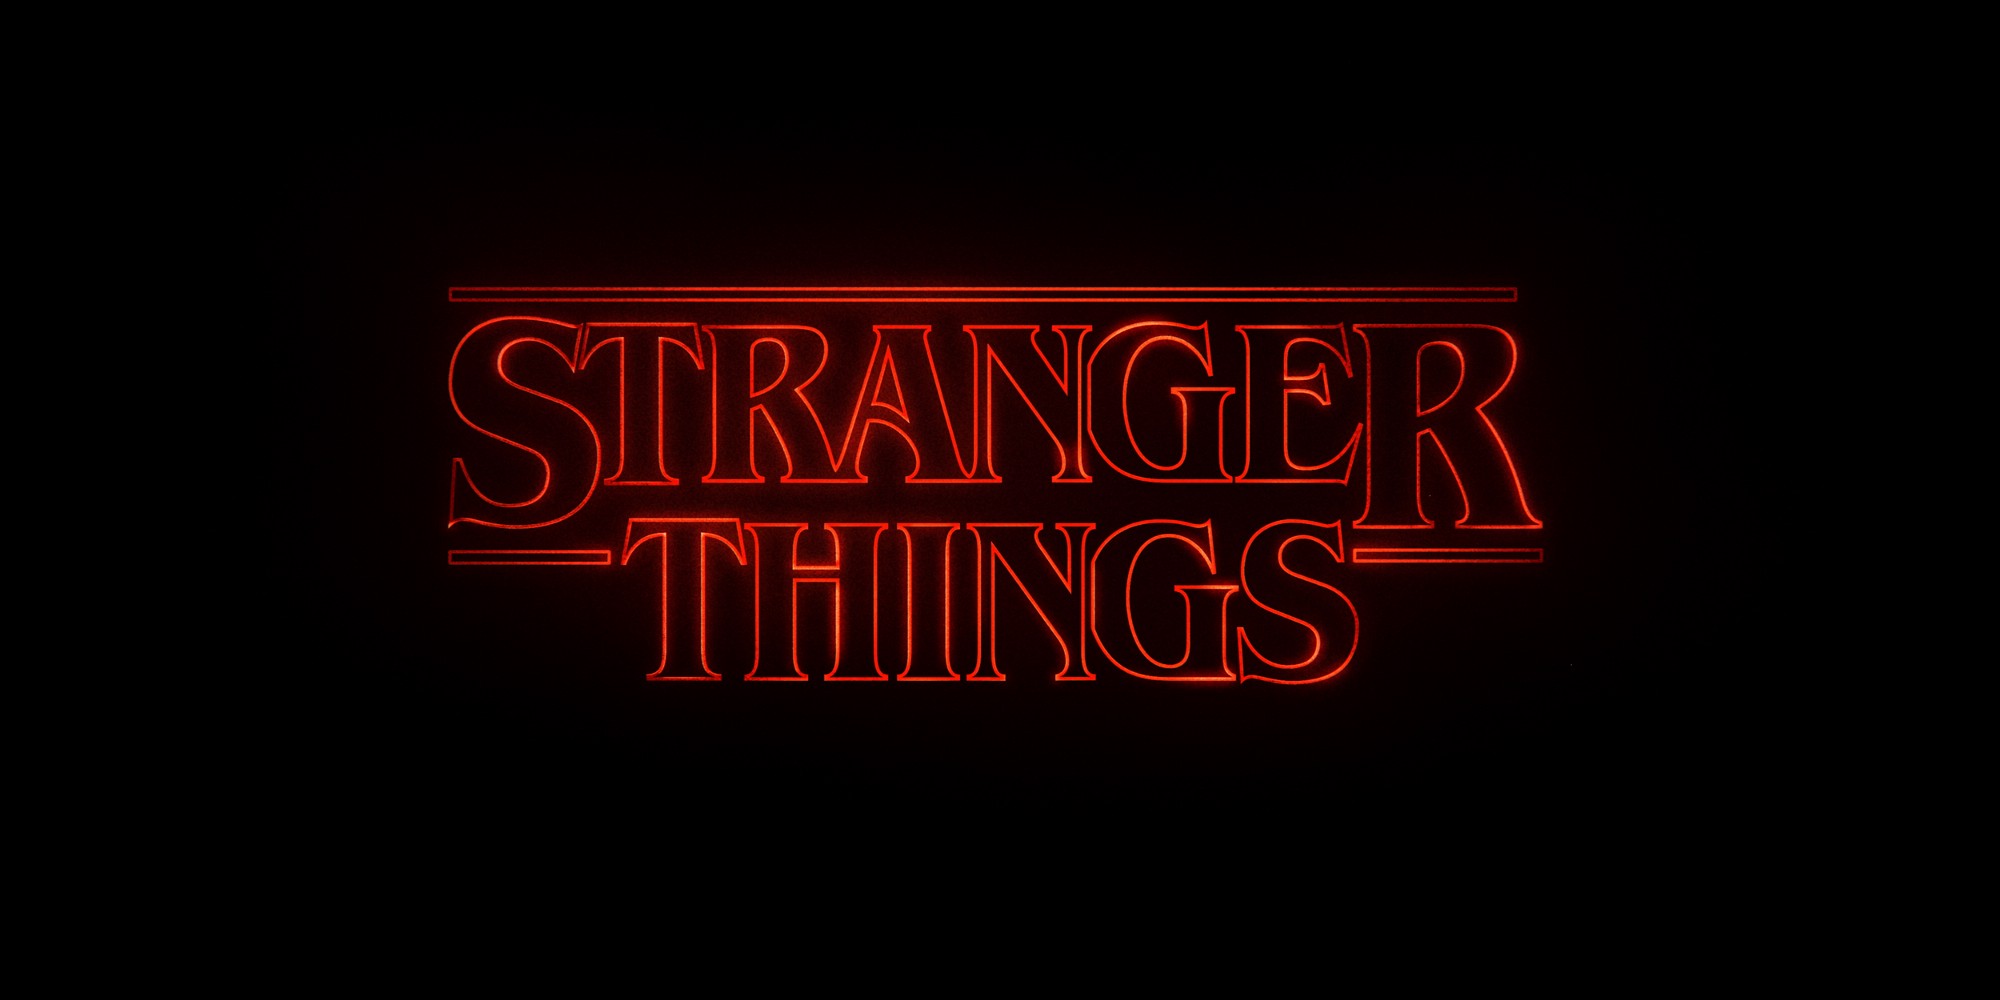 'stranger things' season 2